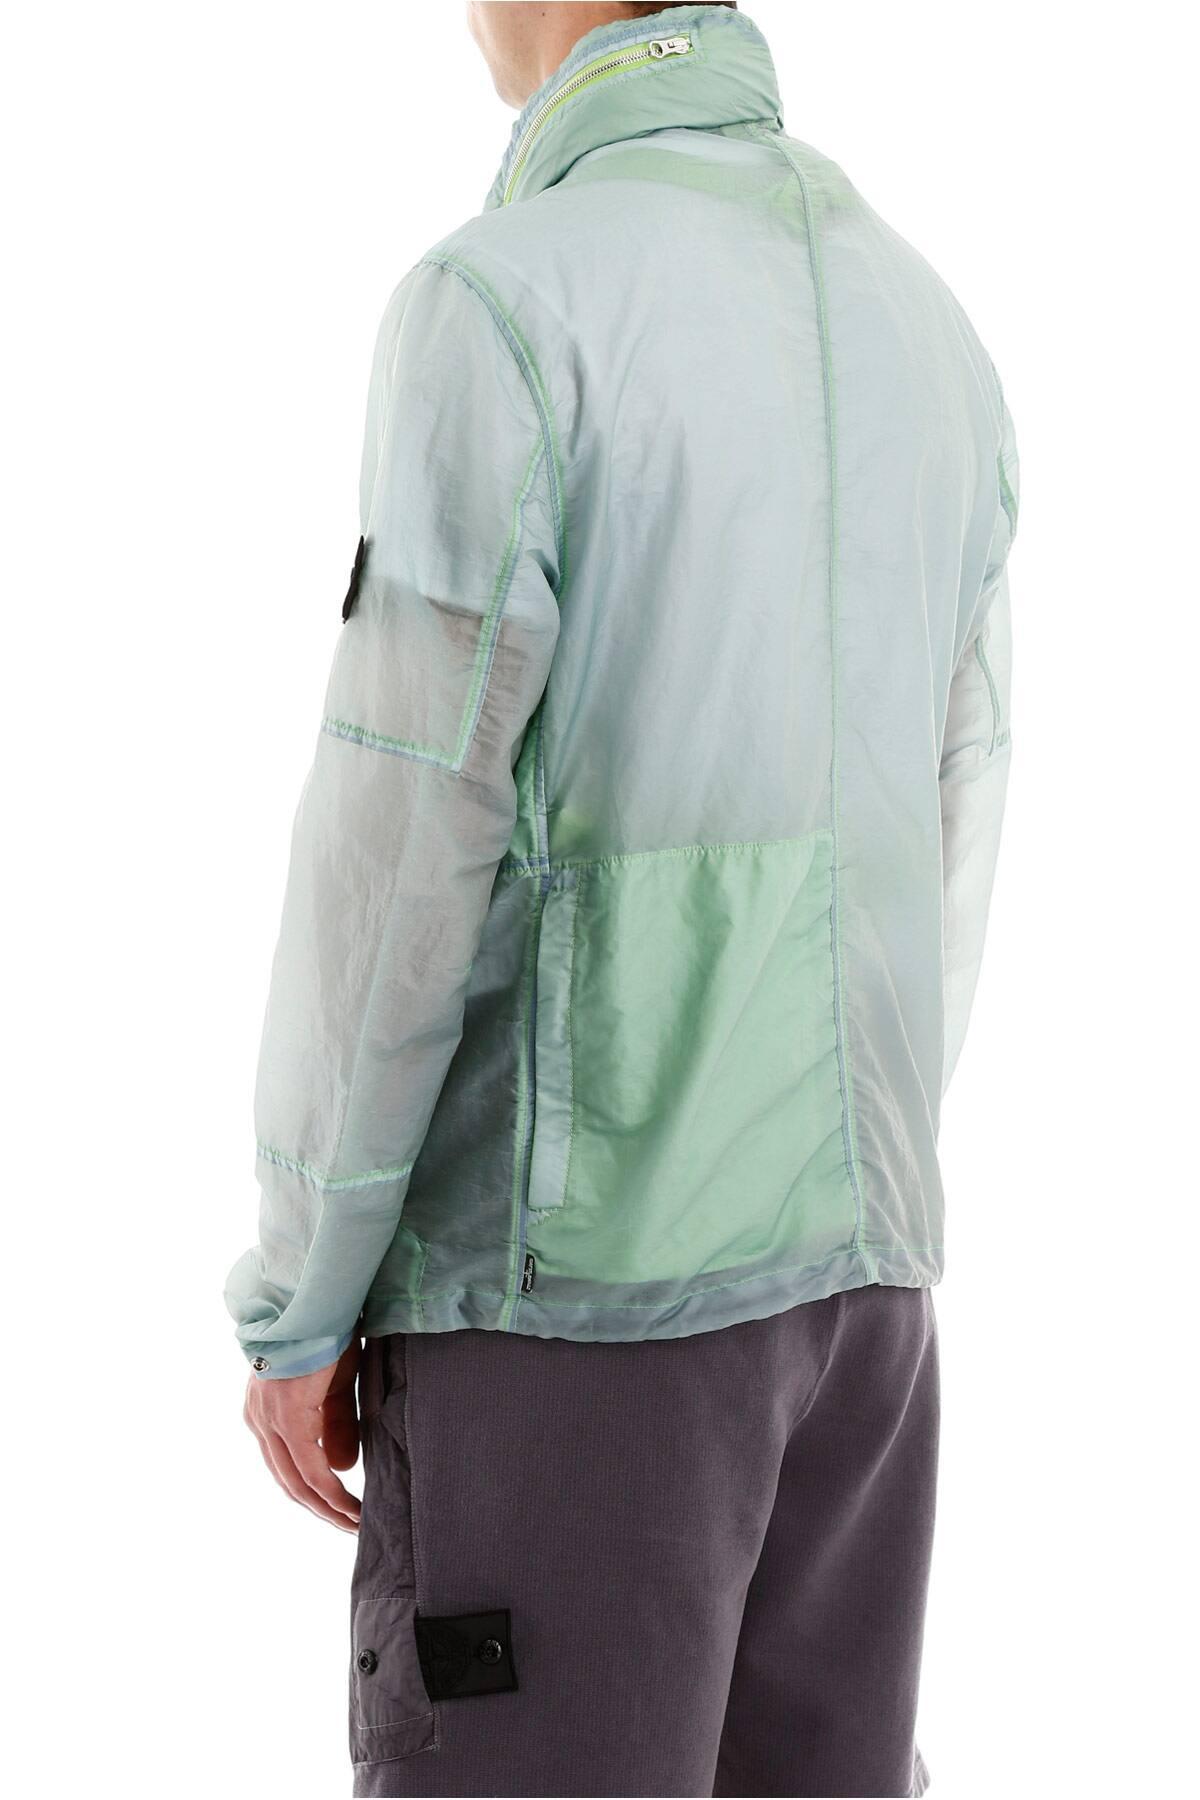 Stone Island Shadow Project Opak Field Jacket in Green for Men | Lyst